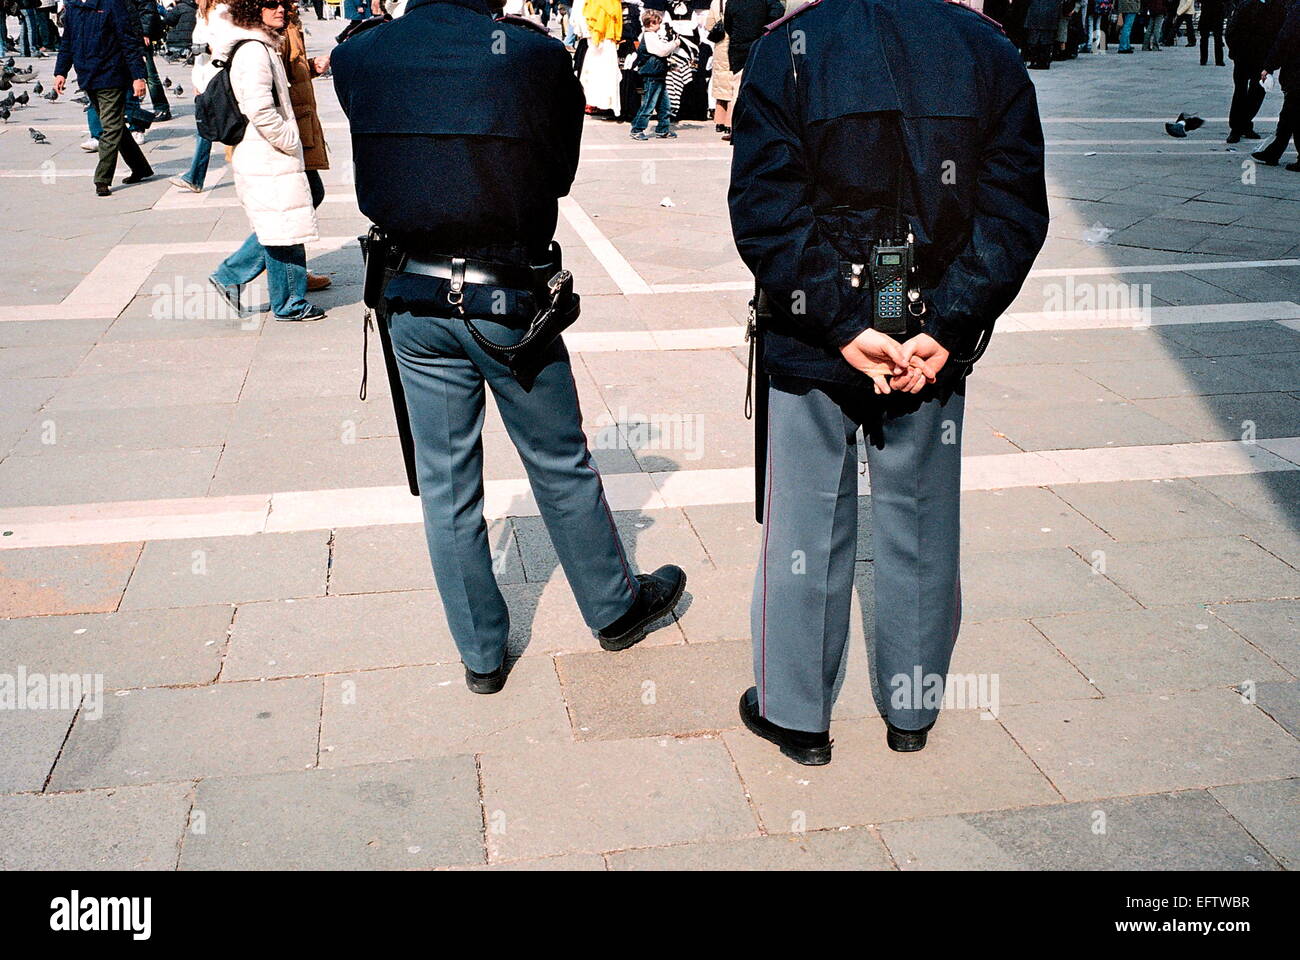 Venezia, Italia - la polizia italiana a guardare i turisti DI PIAZZA SAN MARCO. Foto:JONATHAN EASTLAND REF:51011_1920A4290 Foto Stock